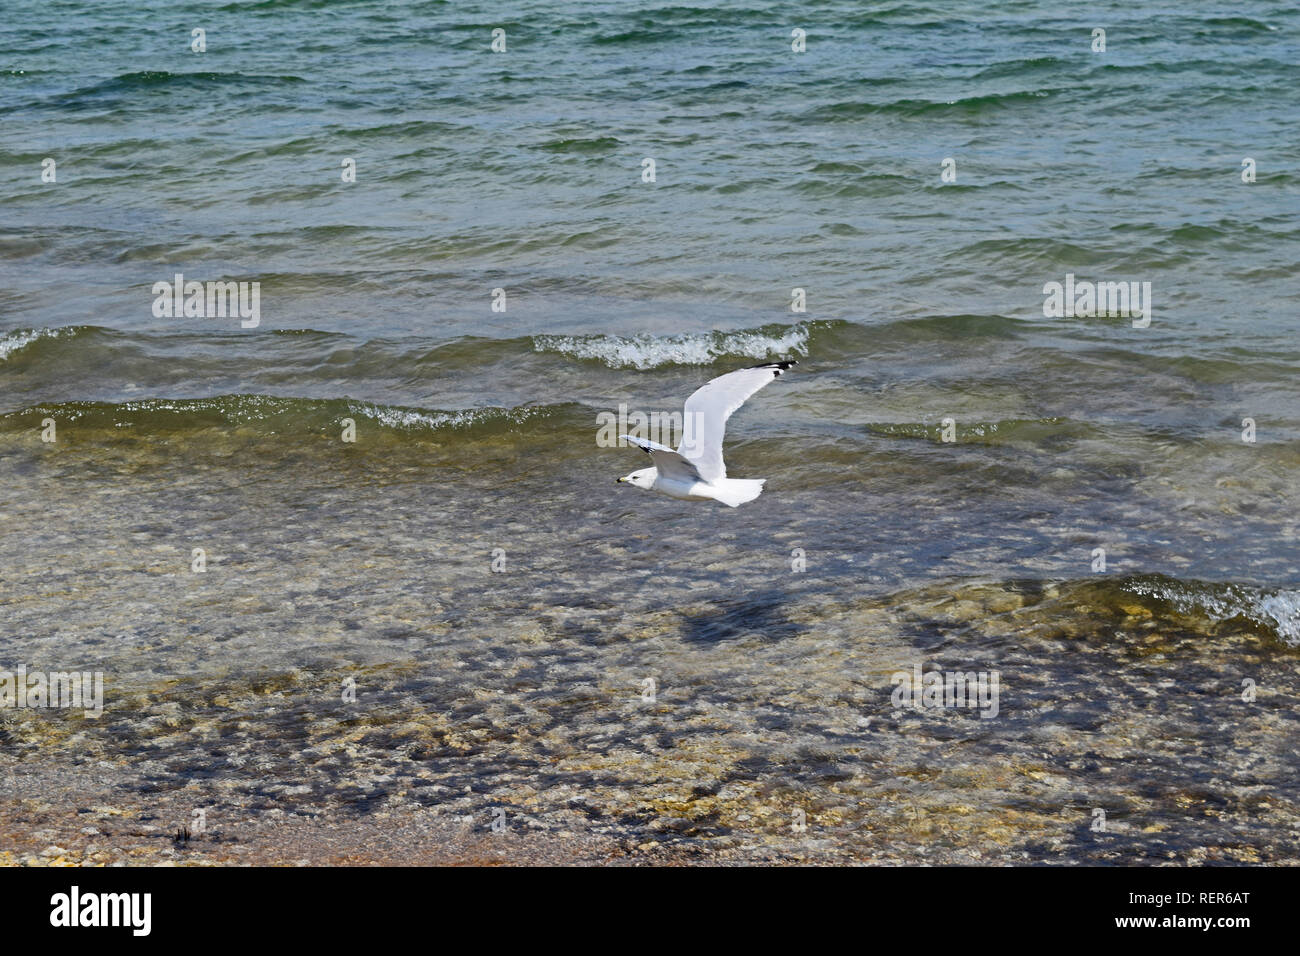 Seagull at Lake Huron Stock Photo